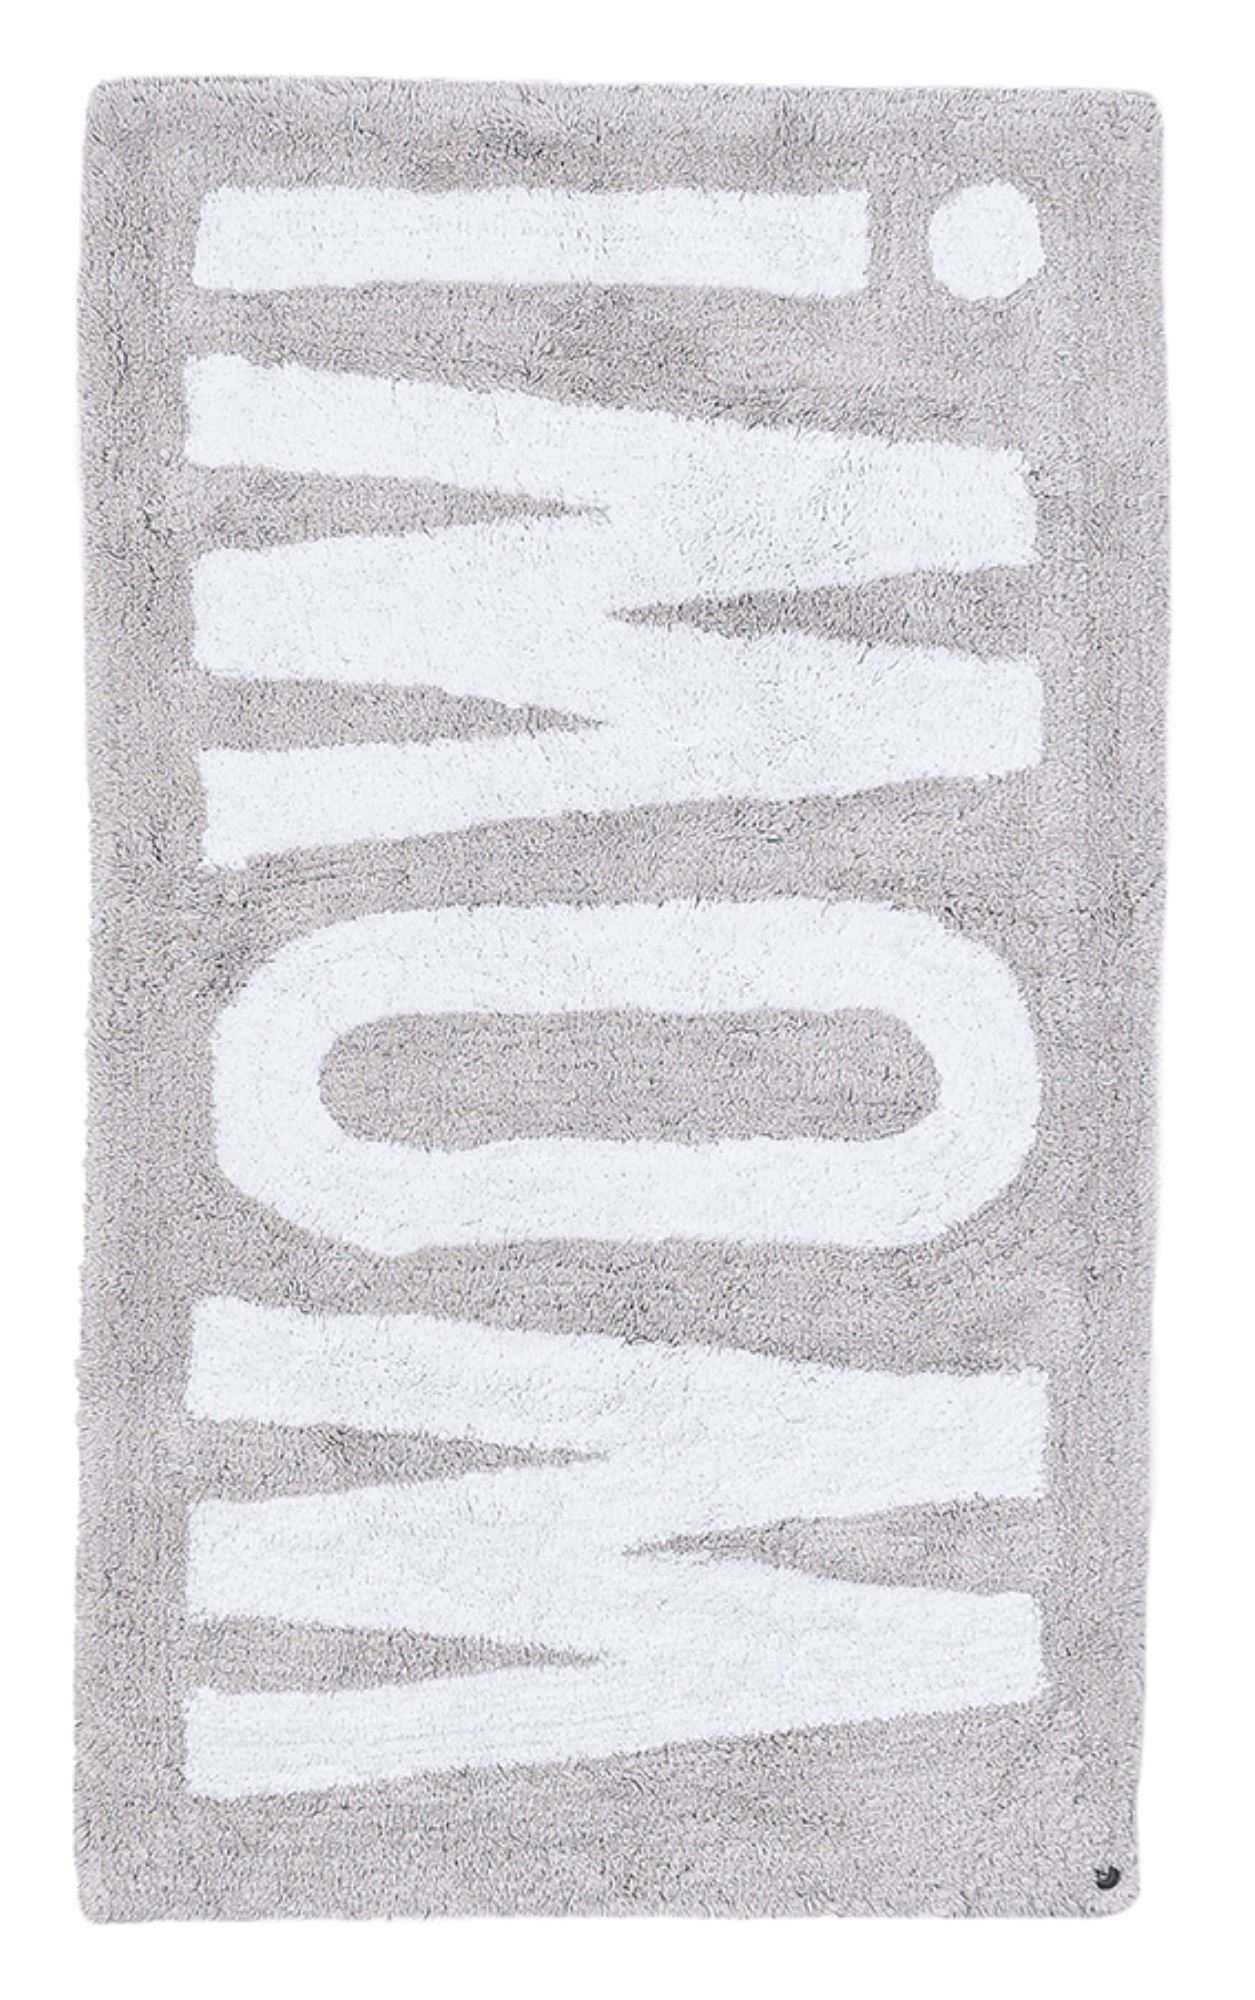 tapis de bain en coton tufté à la main - argent 60x100 cm